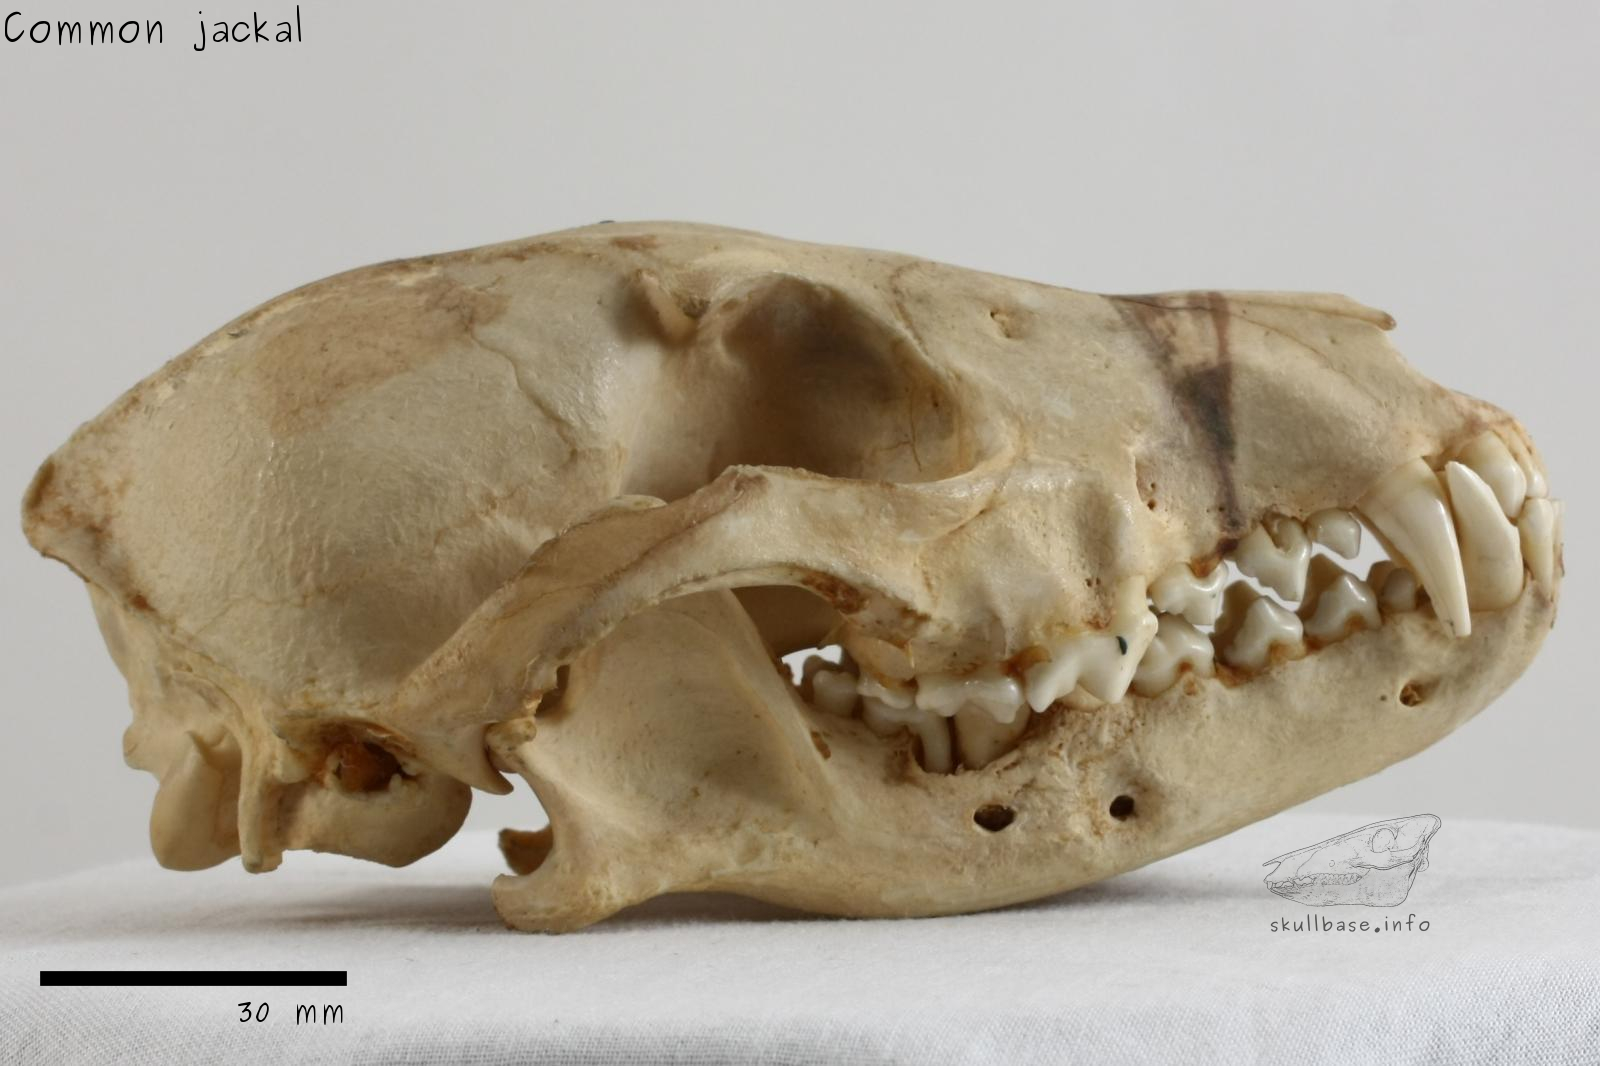 Common jackal (Canis aureus aureus) skull lateral view